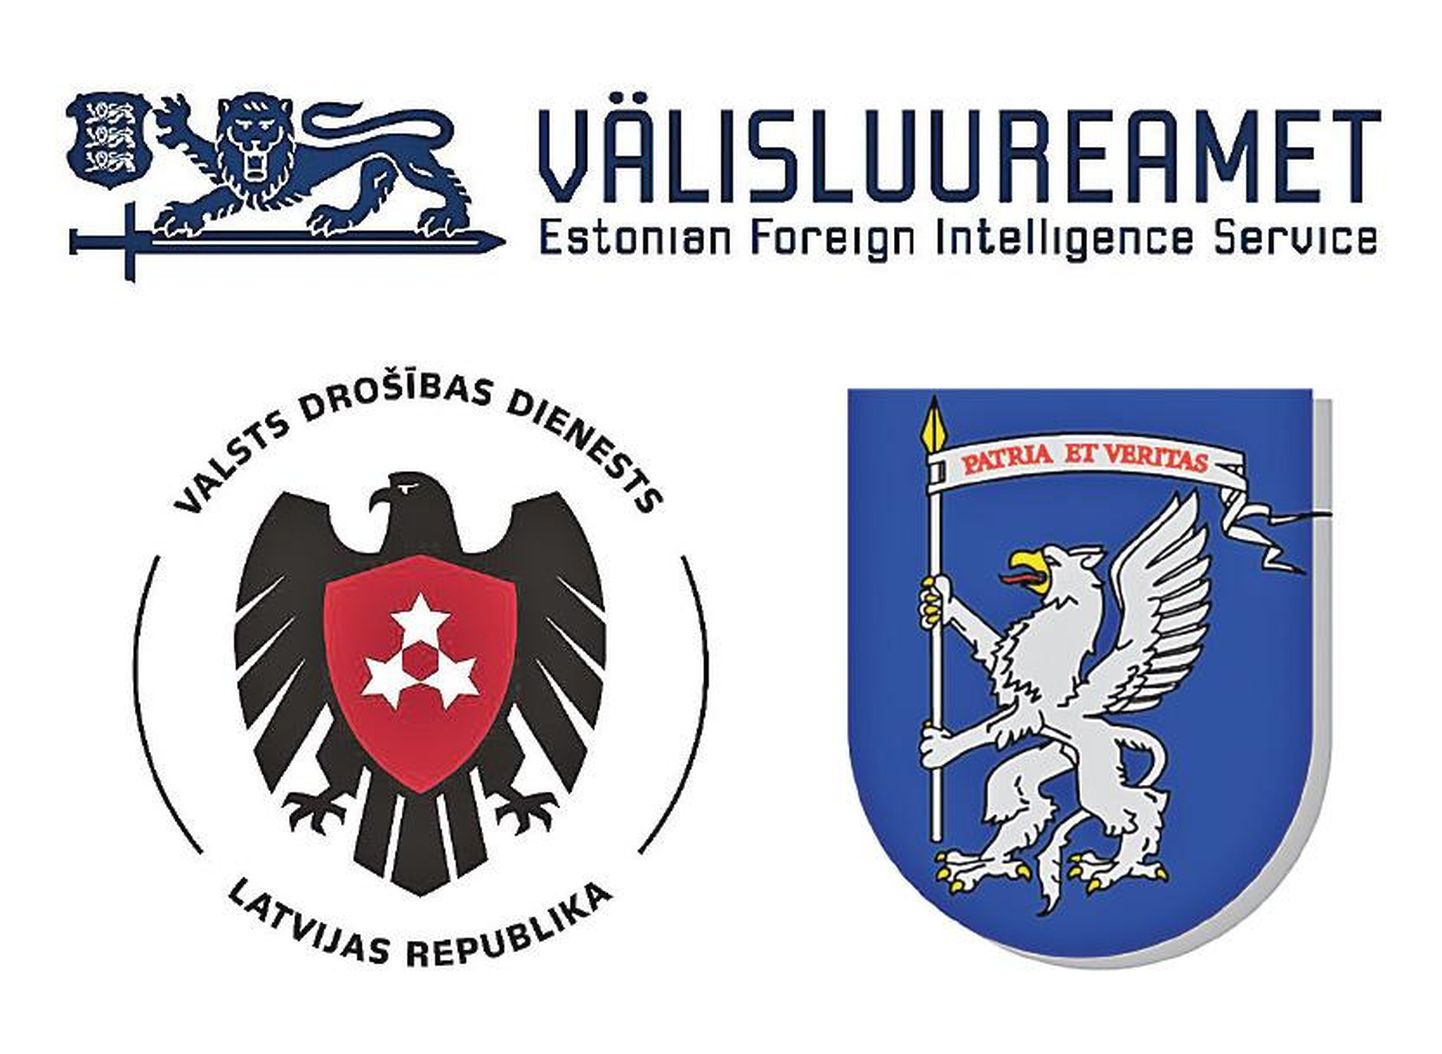 Eesti välisluureameti sõsarjulgeolekuteenistus Lätis on Valsts drošības dienests (VDD) ning Leedus Valstybės saugumo departamentas (VSD).